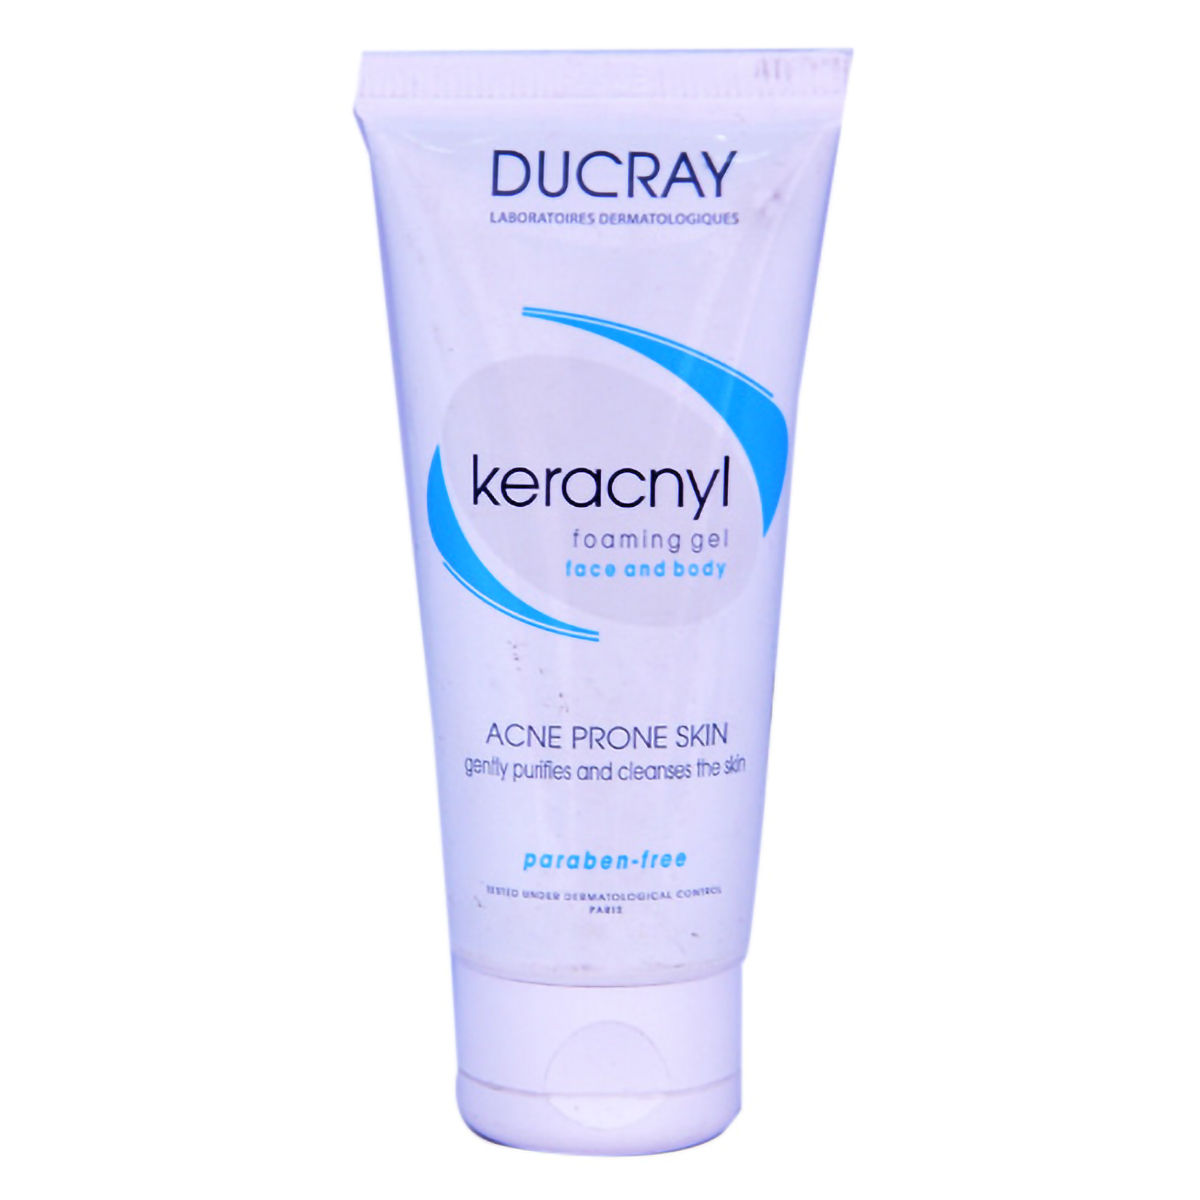 Buy Ducray Keracnyl Face & Body Foaming Gel, 50 ml Online